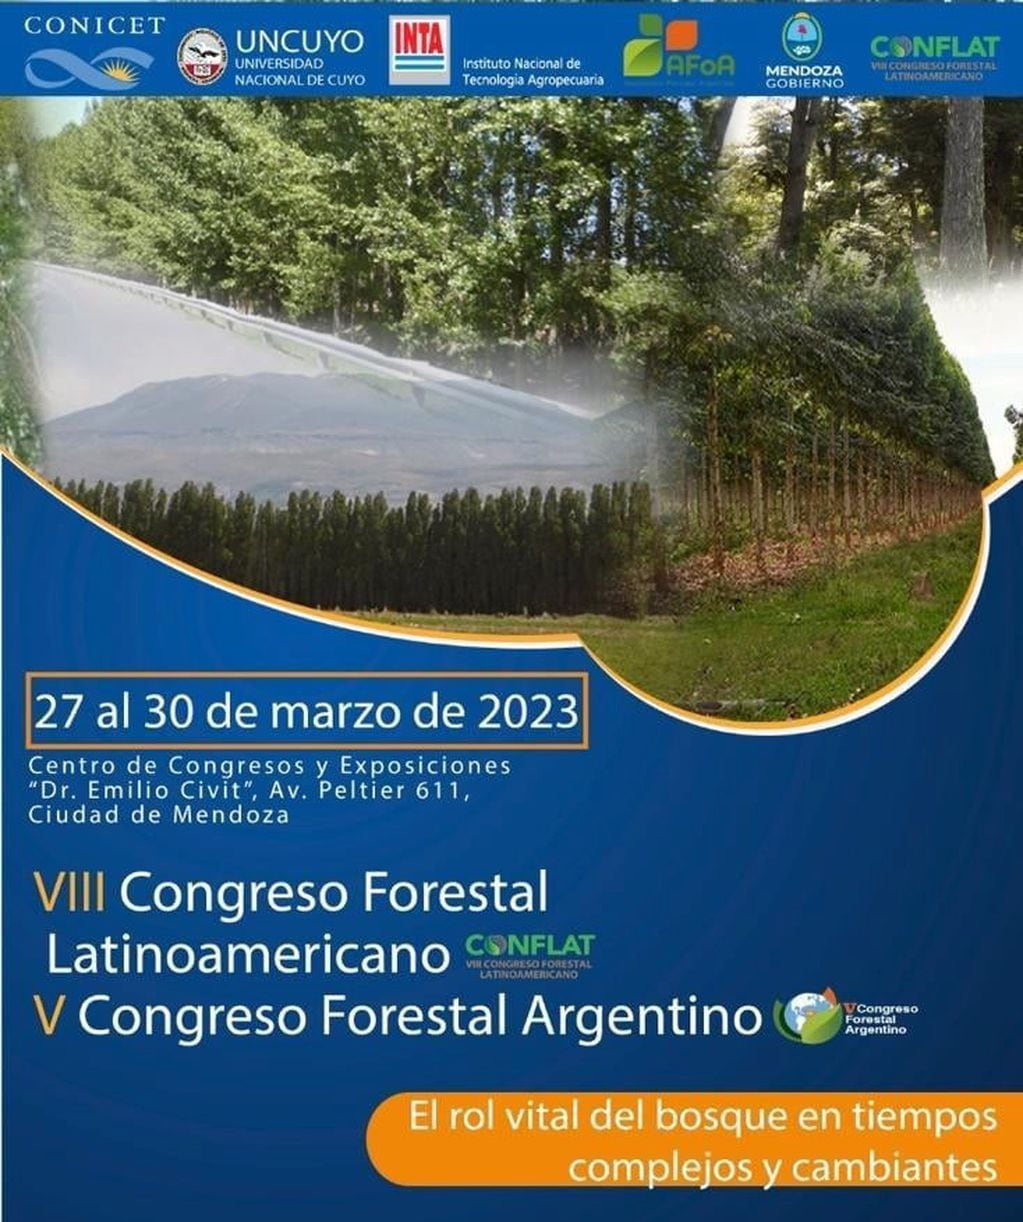 El VIII Congreso Forestal Latinoamericano y V Congreso Forestal Argentino debatirán en nuestra capital, a partir del lunes próximo.